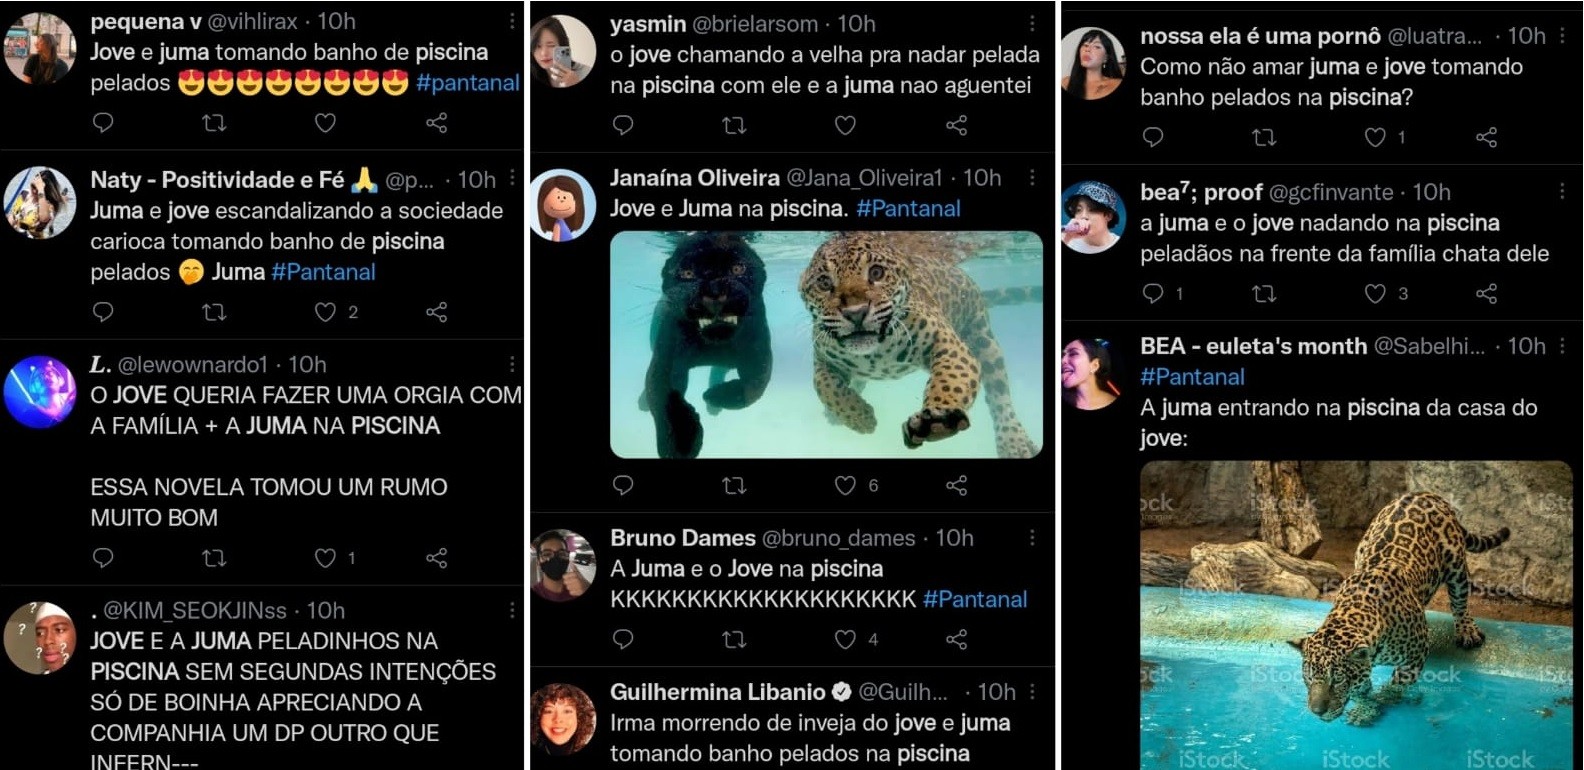 Juma (Alanis Guillen) e Jove (Jesuíta Barbosa) tomam banho de piscina pelados e agitam as redes sociais (Foto: Reprodução/Twitter)